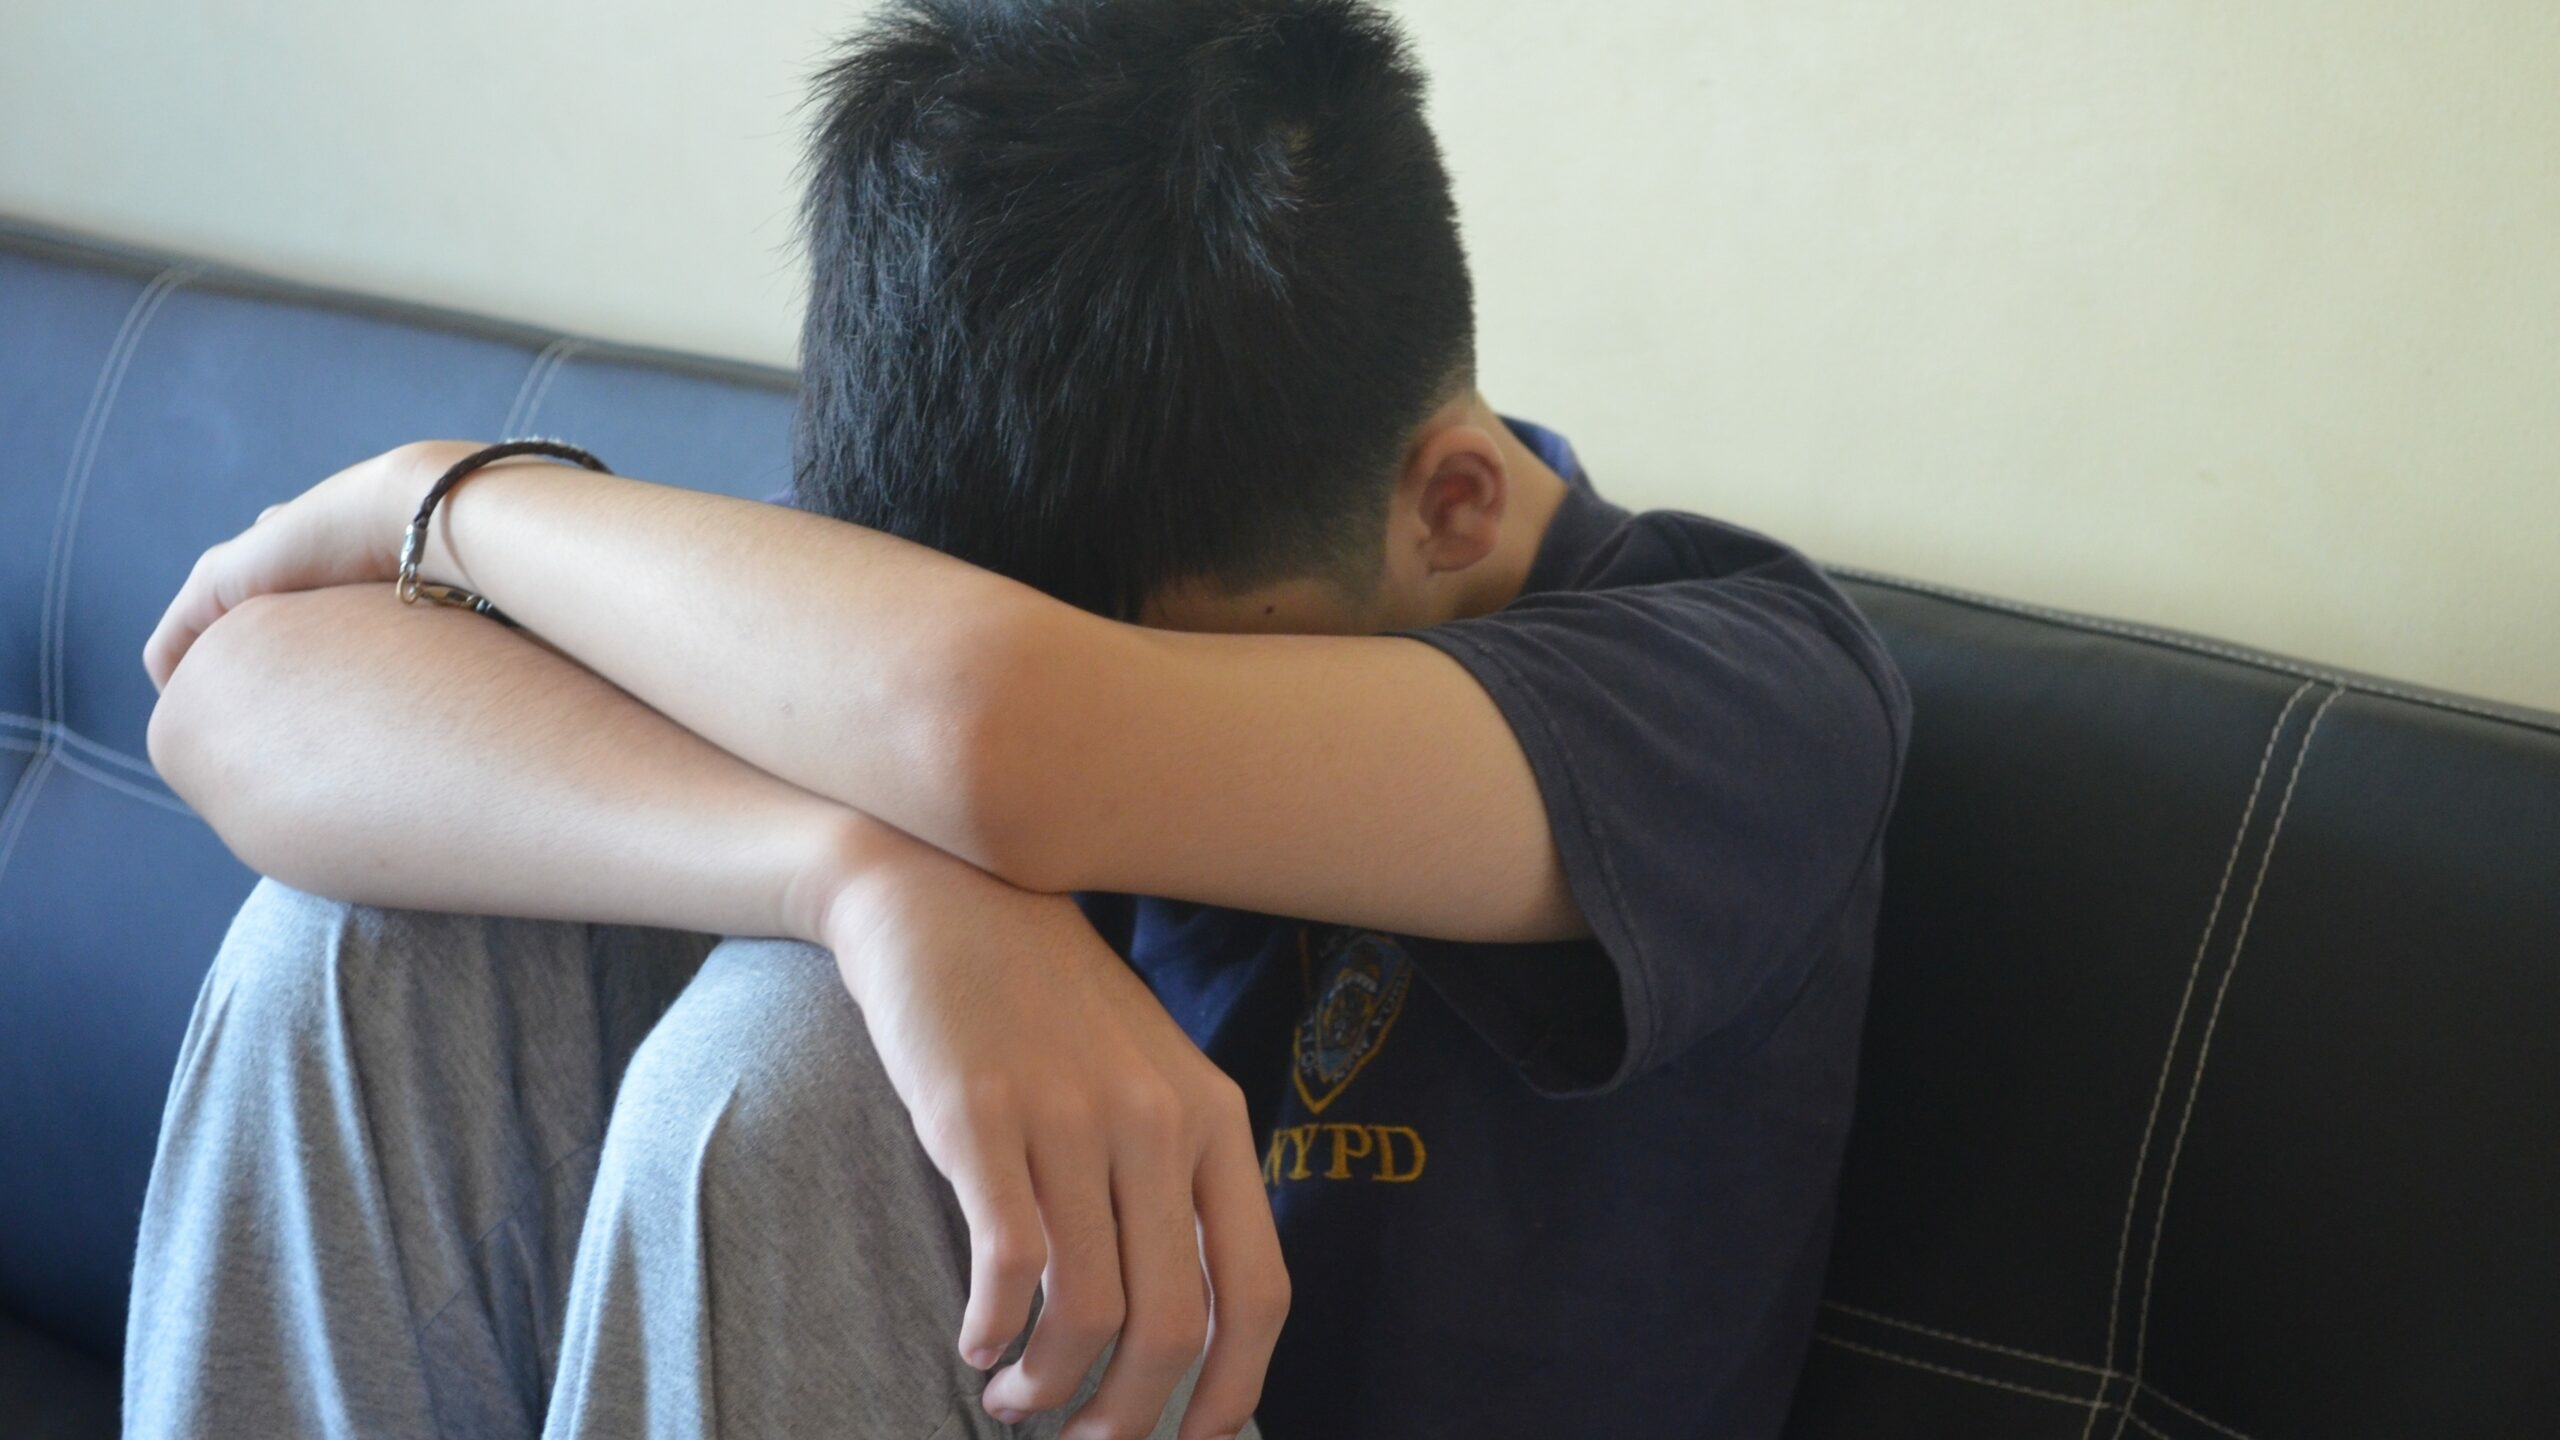 Один из избивших мальчика на Купчинской подростков оказался уроженцем Узбекистана: его задержали